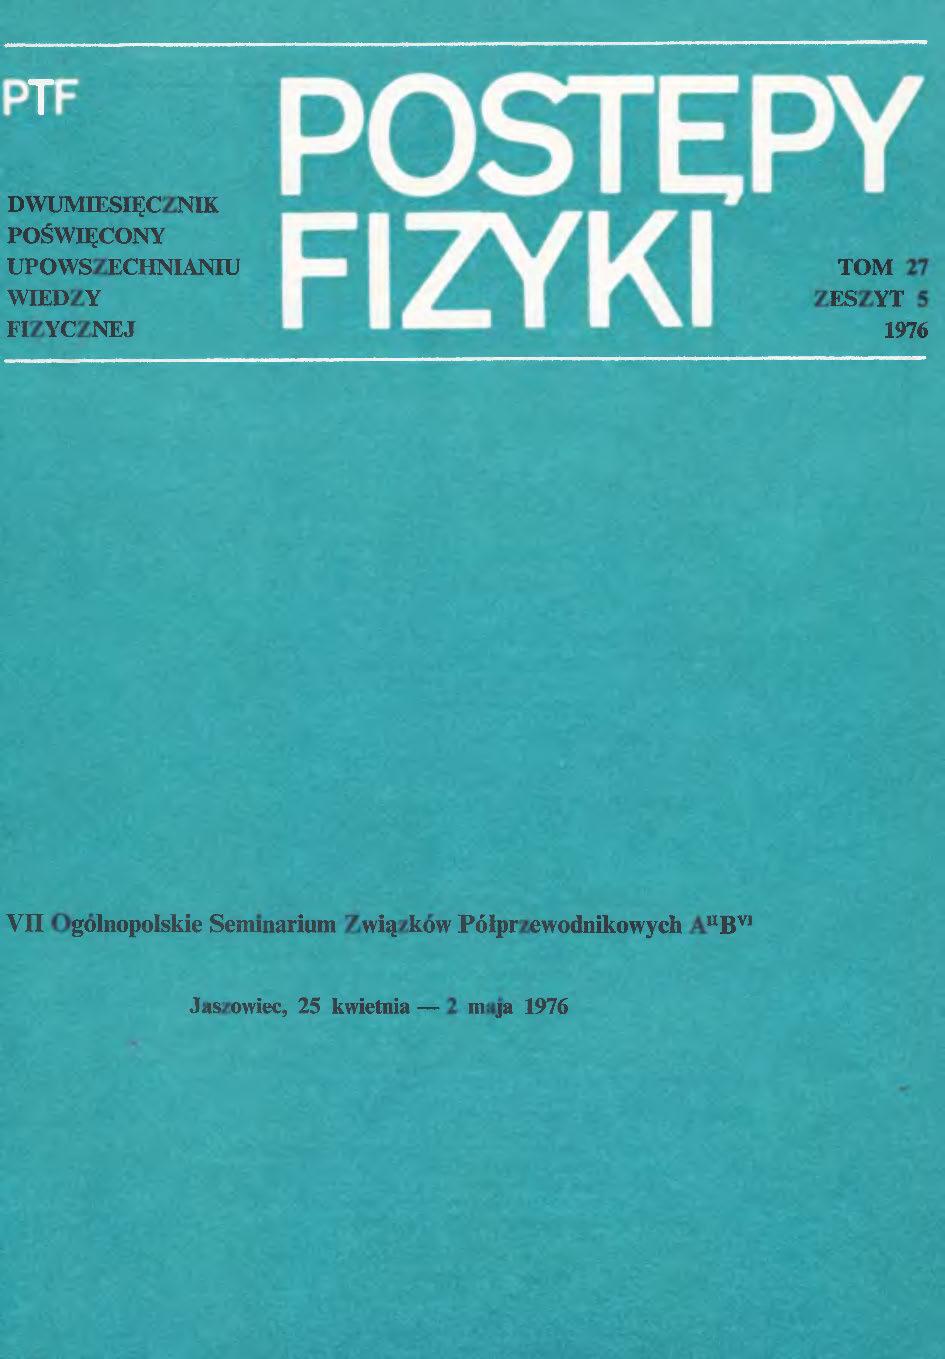 Postępy Fizyki 27 (5) 1976